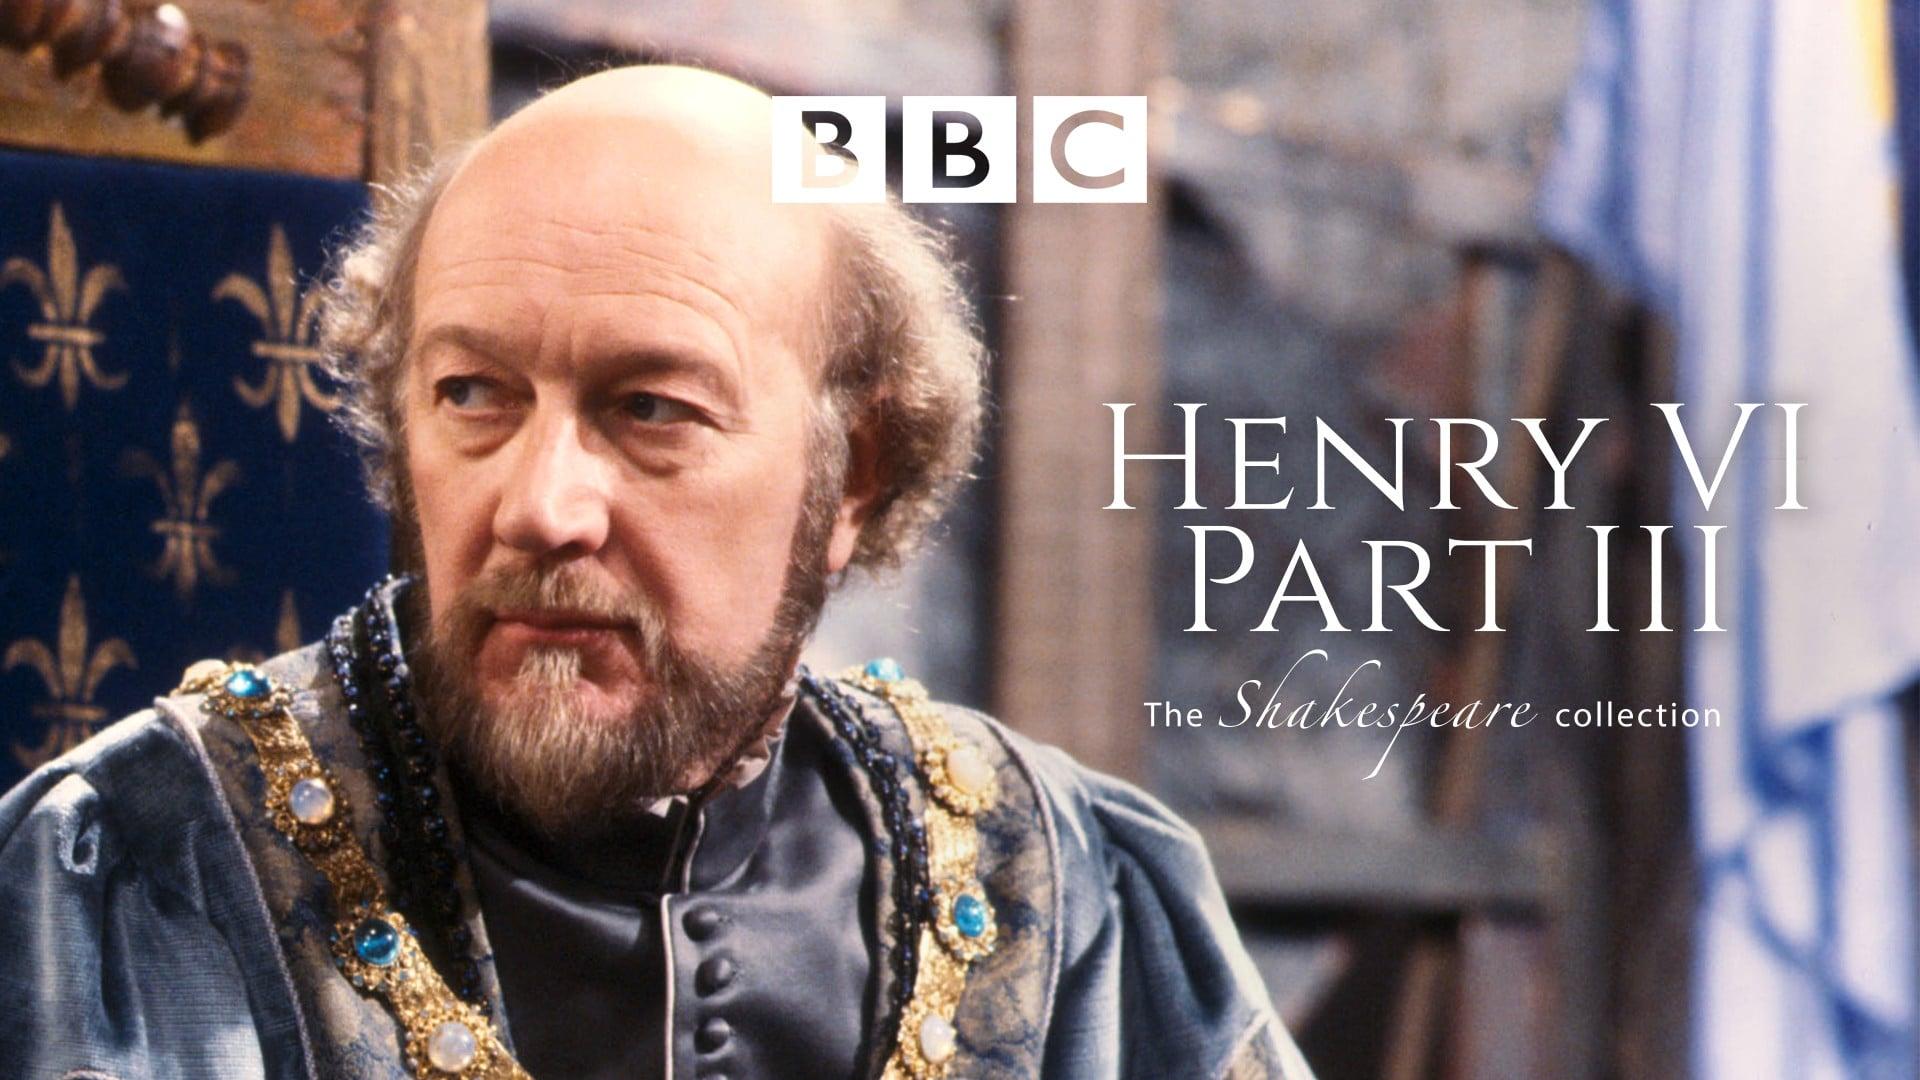 Henry VI Part 3 backdrop